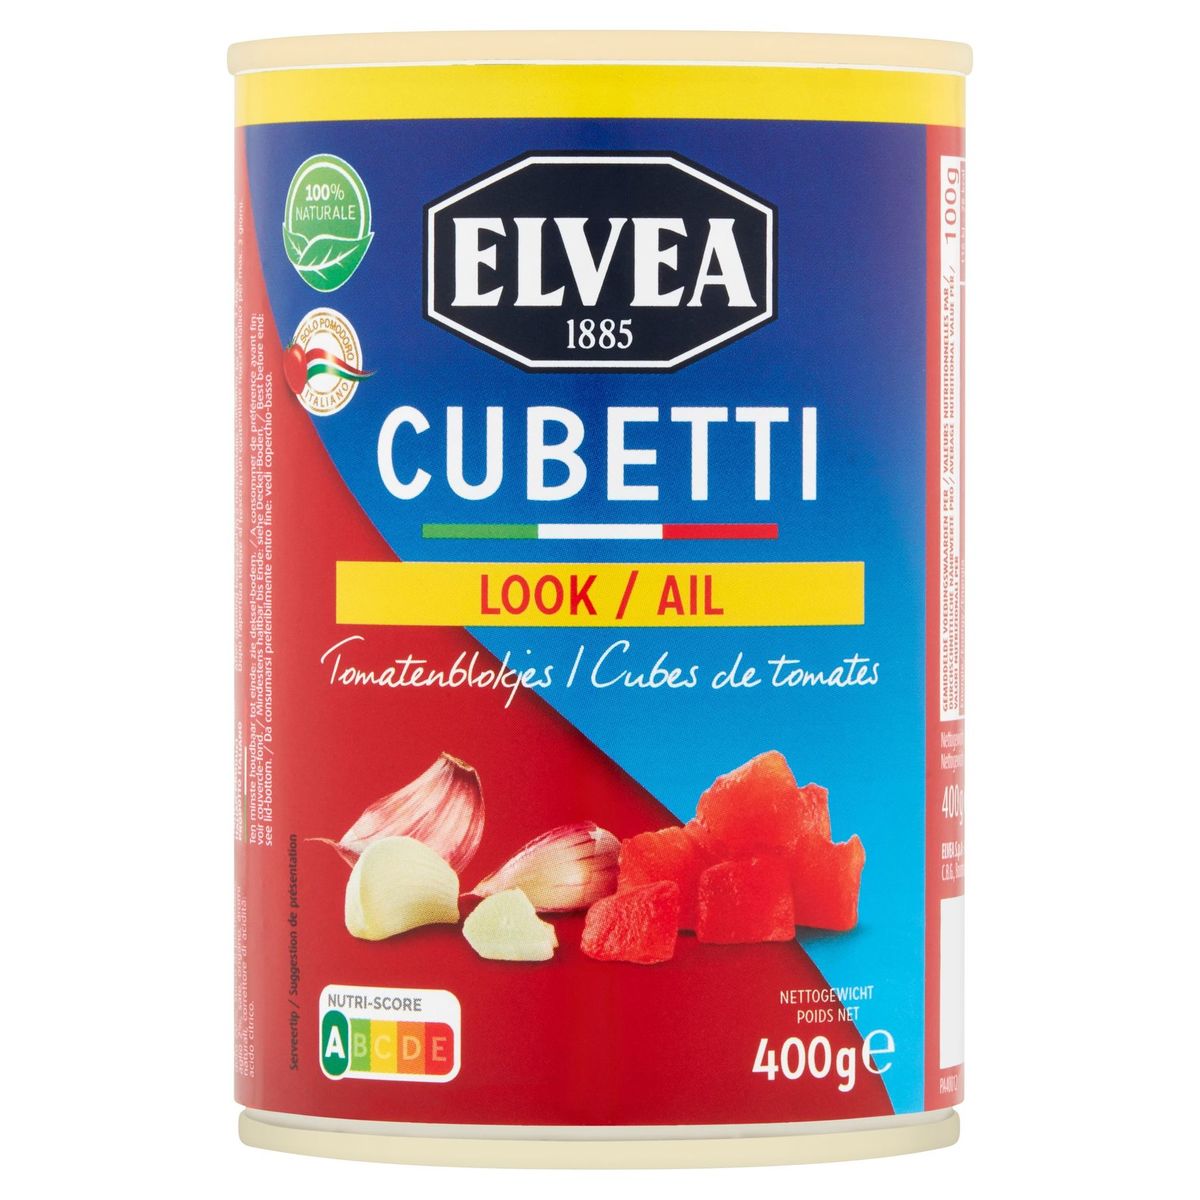 Elvea Cubetti Ail Cubes de Tomates 400 g